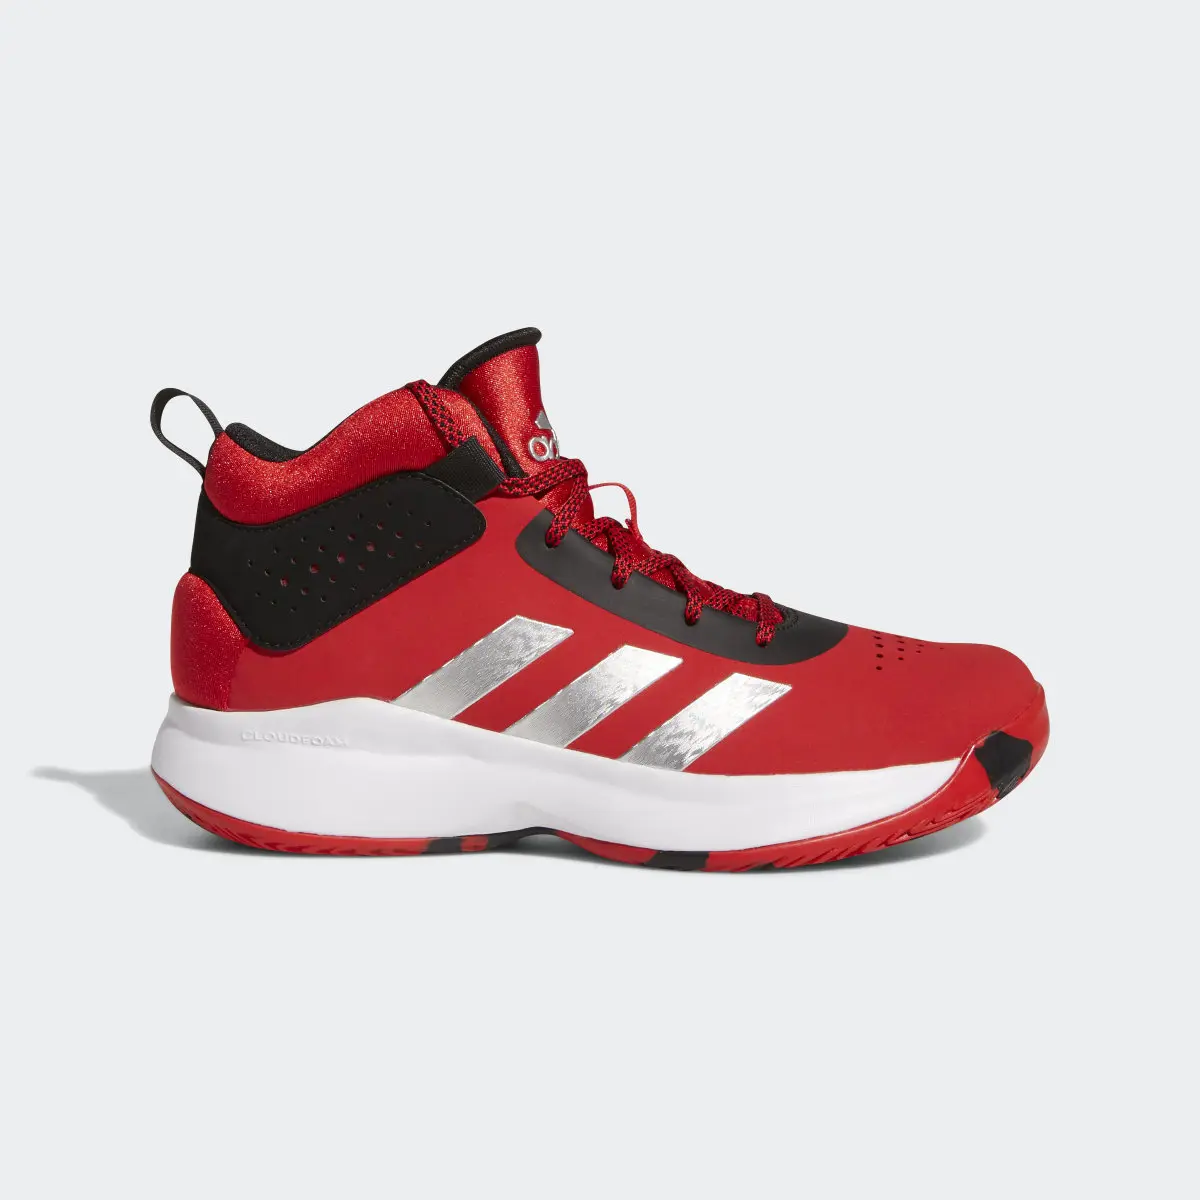 Adidas Cross Em Up 5 Wide Basketball Shoes. 2